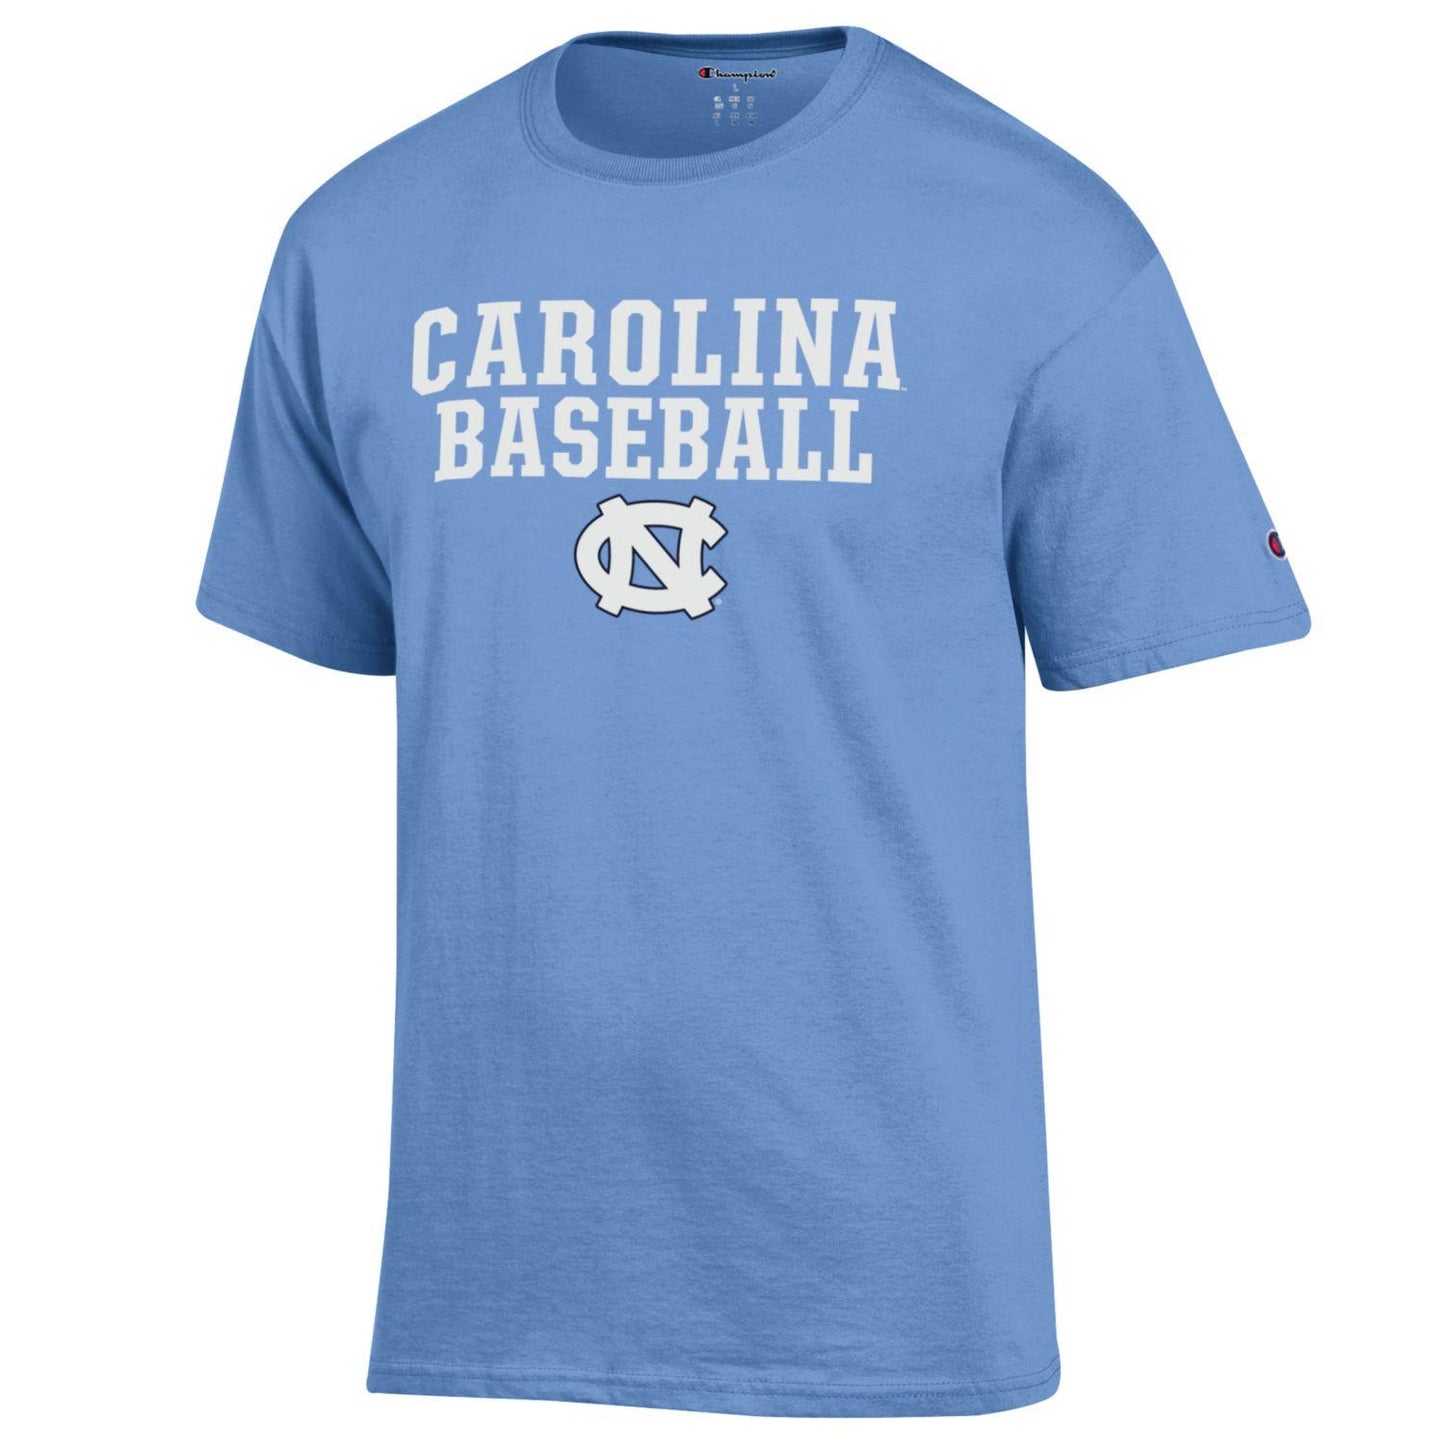 Carolina Baseball T-Shirt with UNC Logo by Champion